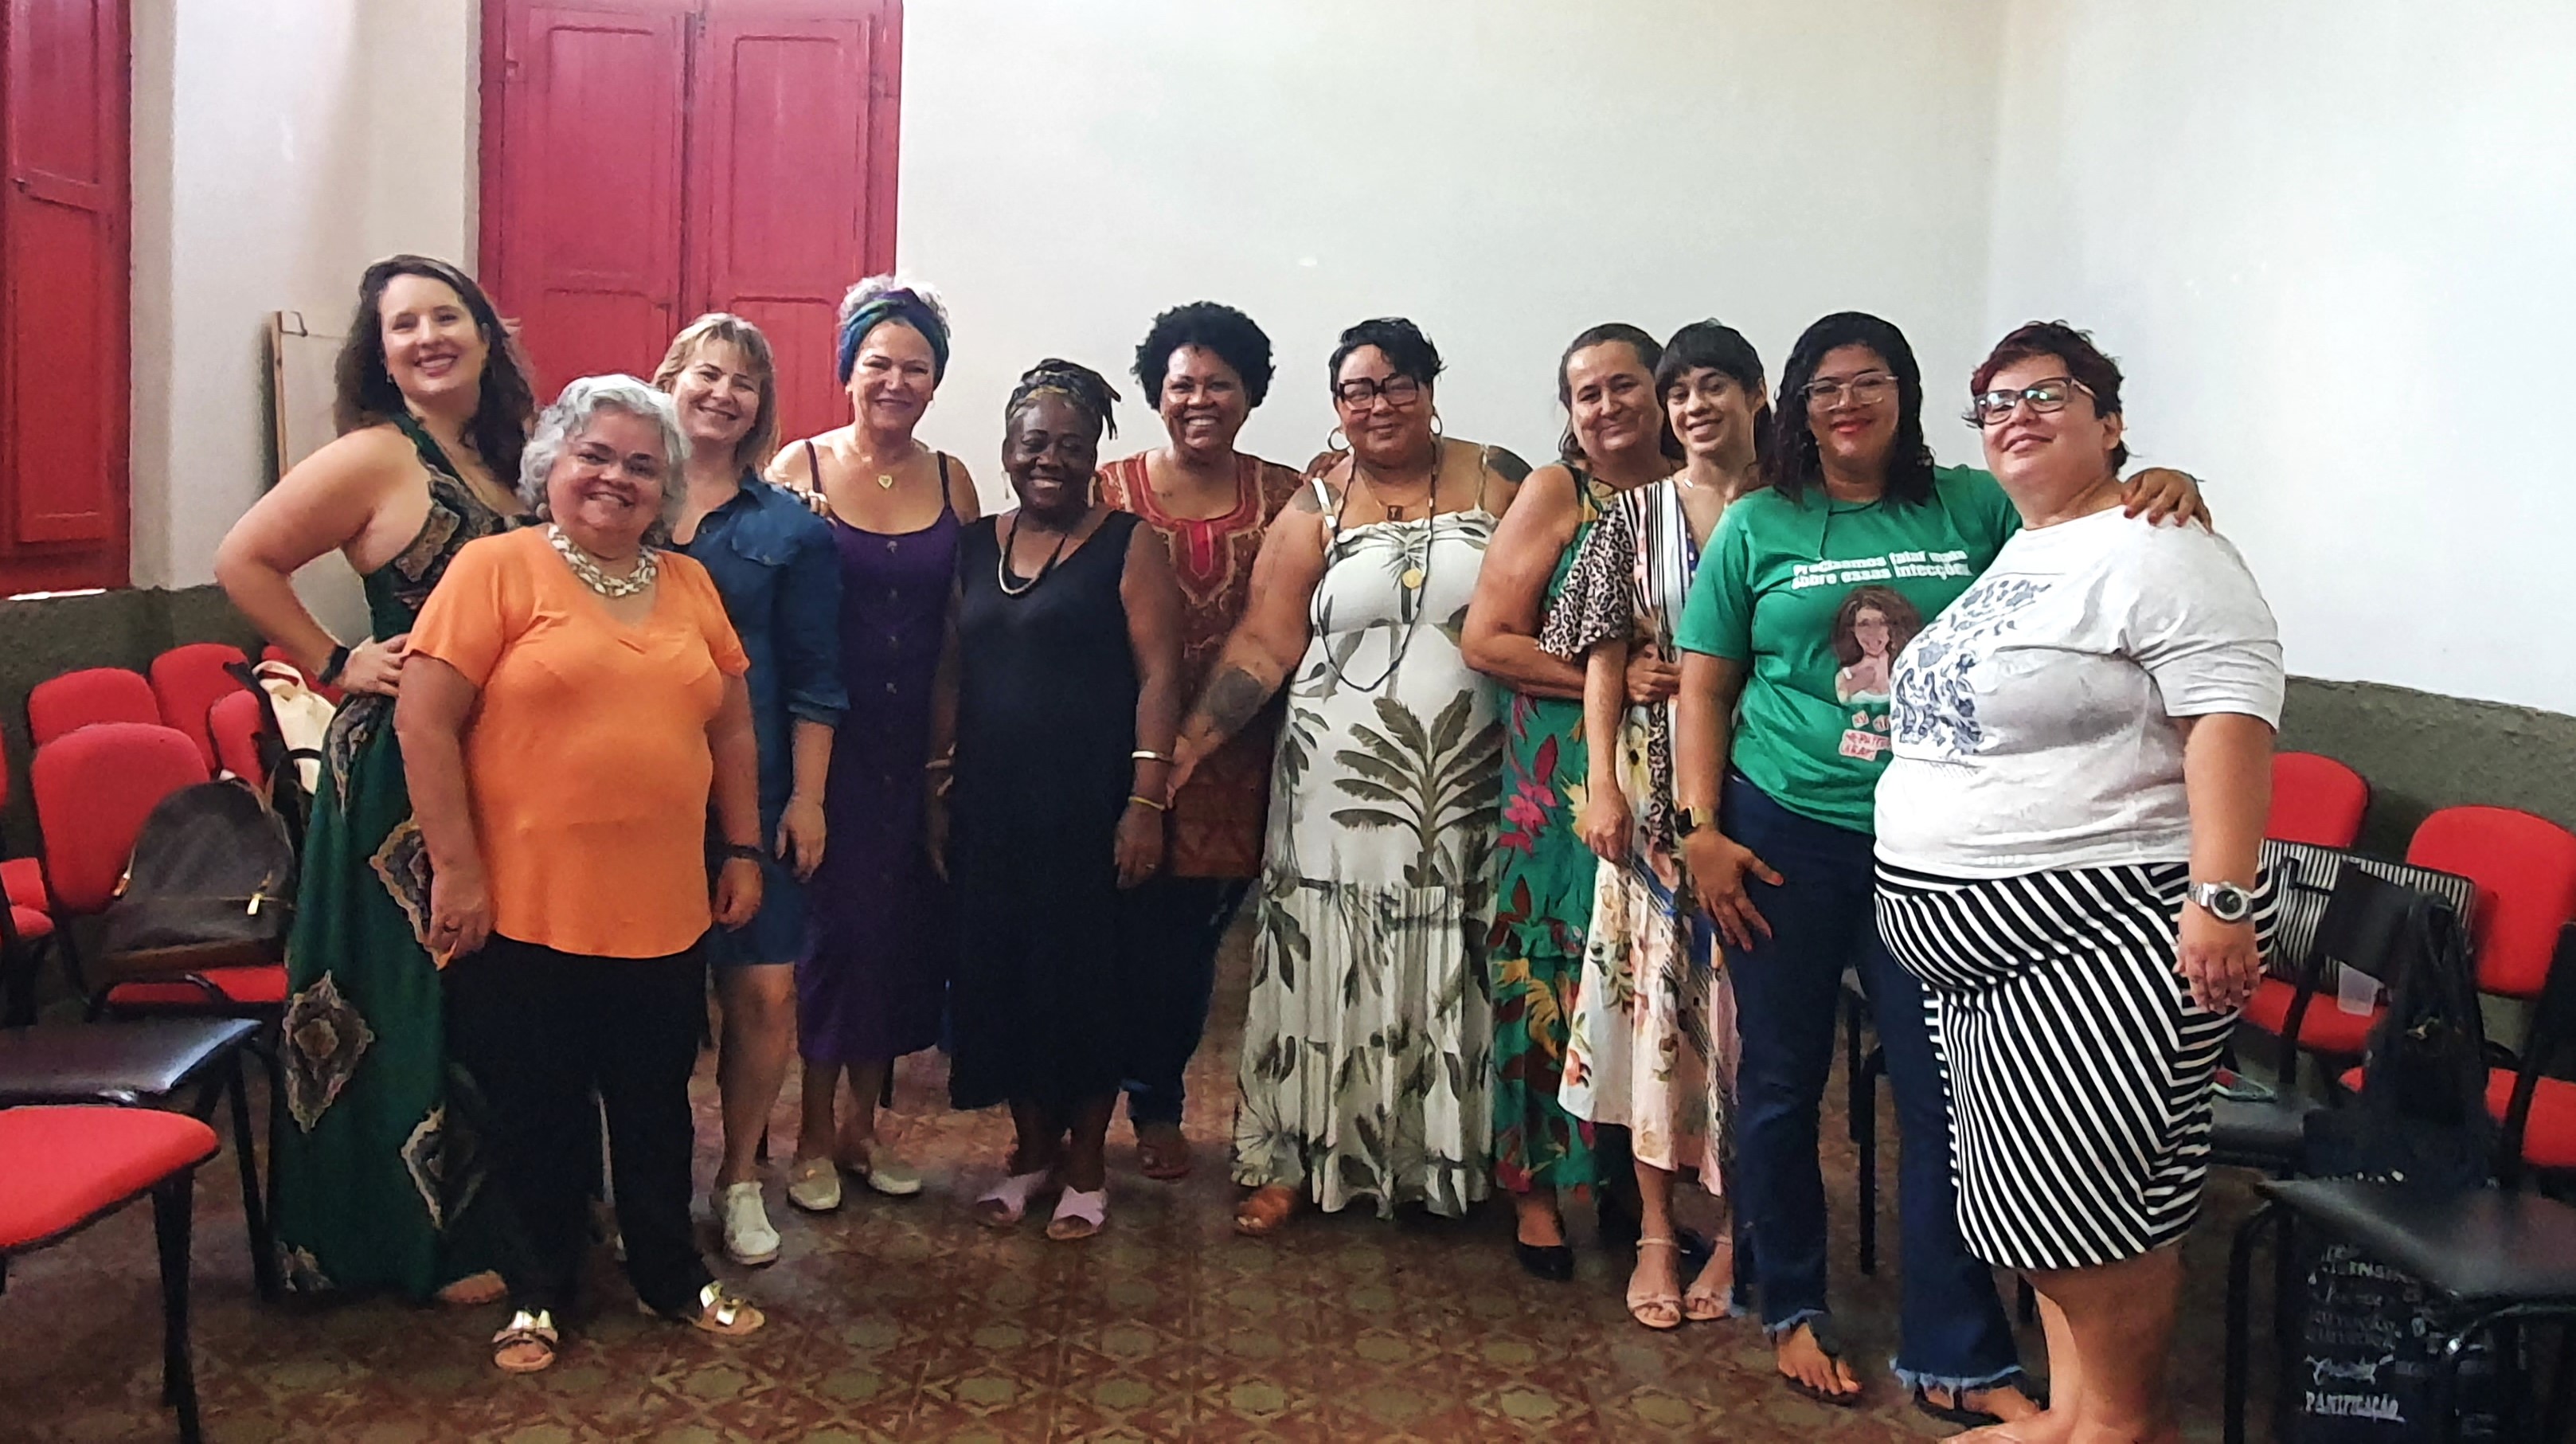 Mulheres reunidas em Teresina, no Piauí, ajudaram a fortaçecer o enfrentamento à violência baseada em gênero. Foto: ©UNFPA